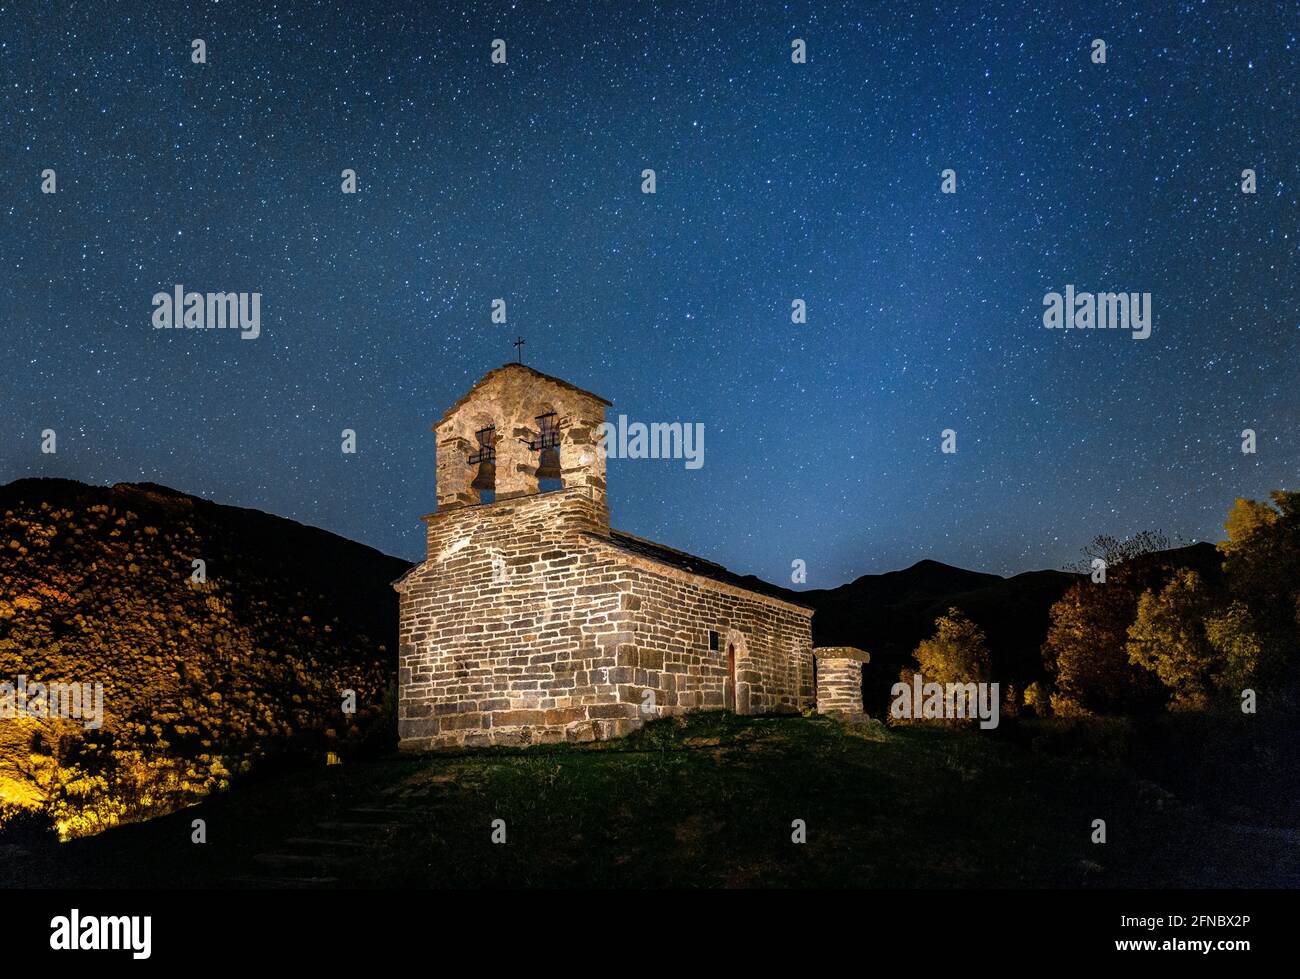 Sant Quirc de Durro Eremo in una notte d'autunno (Valle di Boí, Catalogna, Spagna, Pirenei) ESP: Ermita de Sant Quirc de Durro una noche de otoño Foto Stock